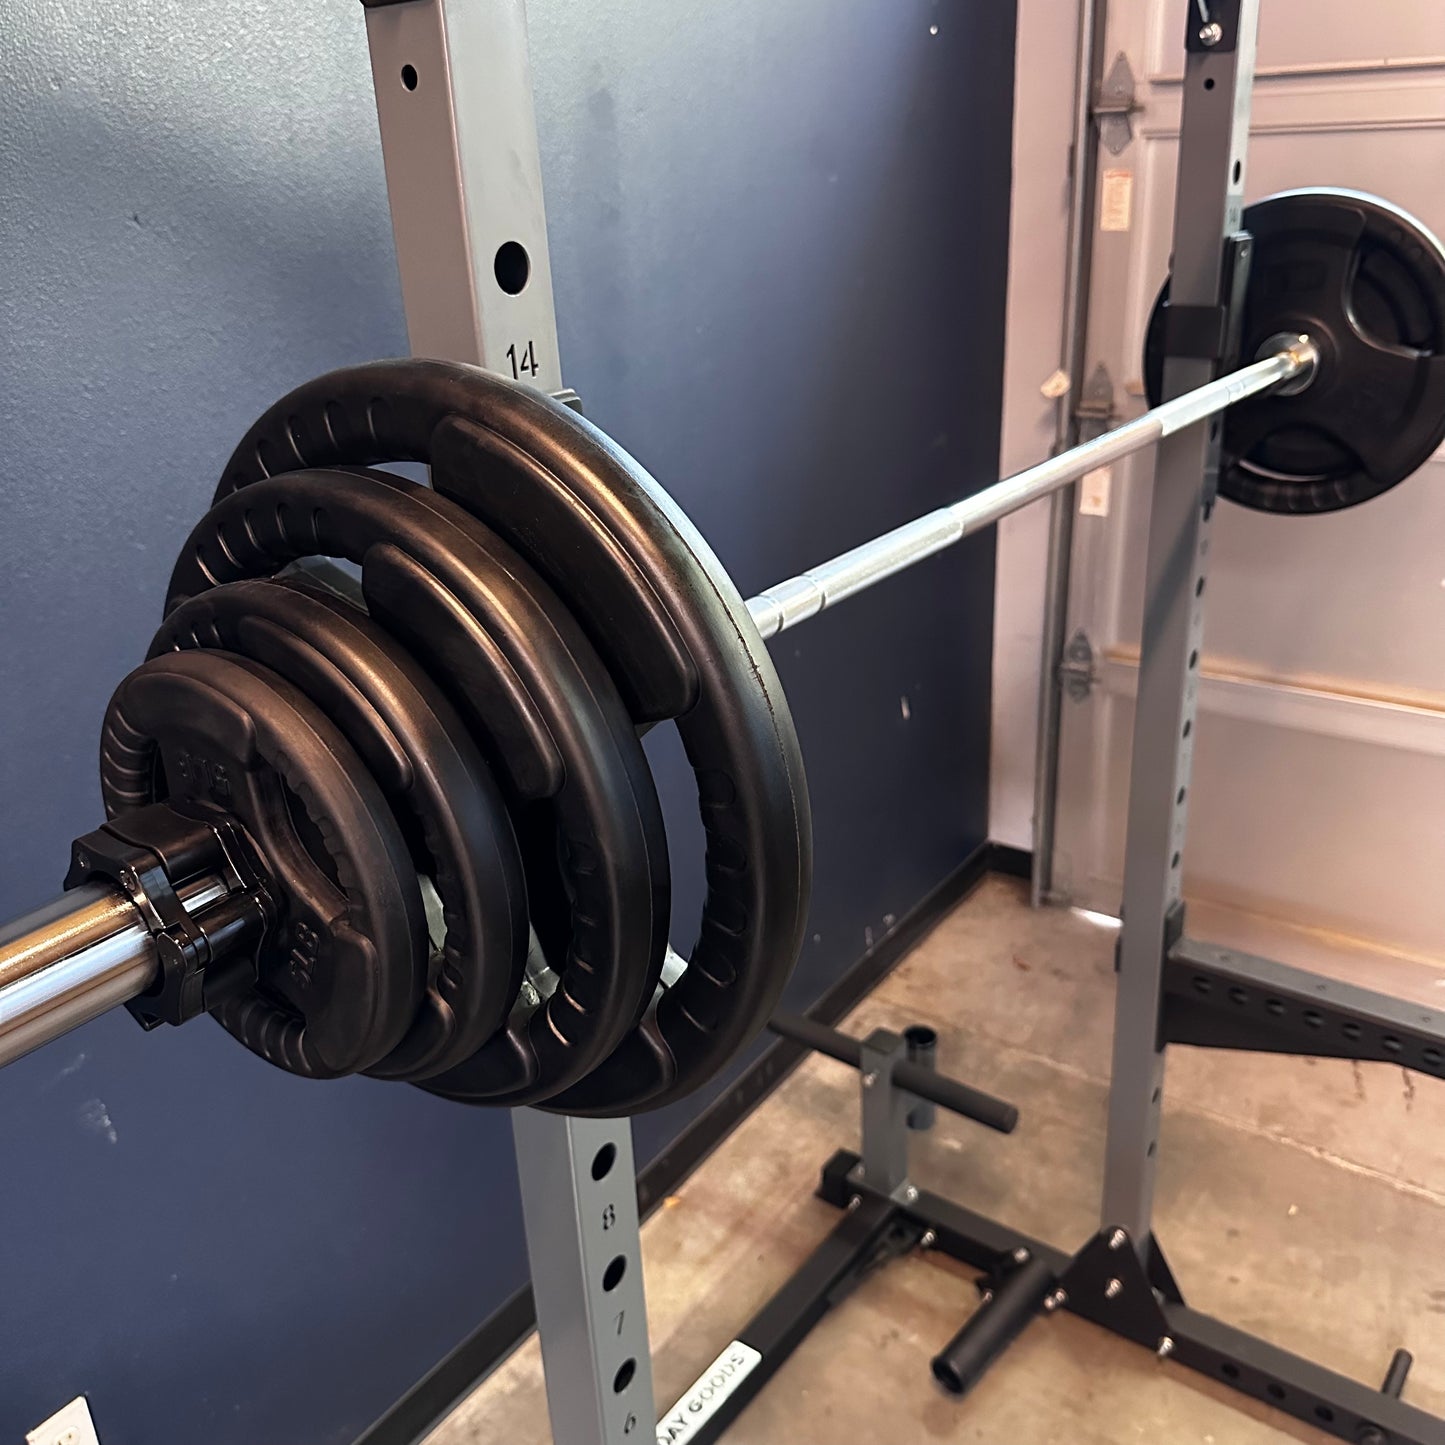 170 lb weight grip plate set + barbell